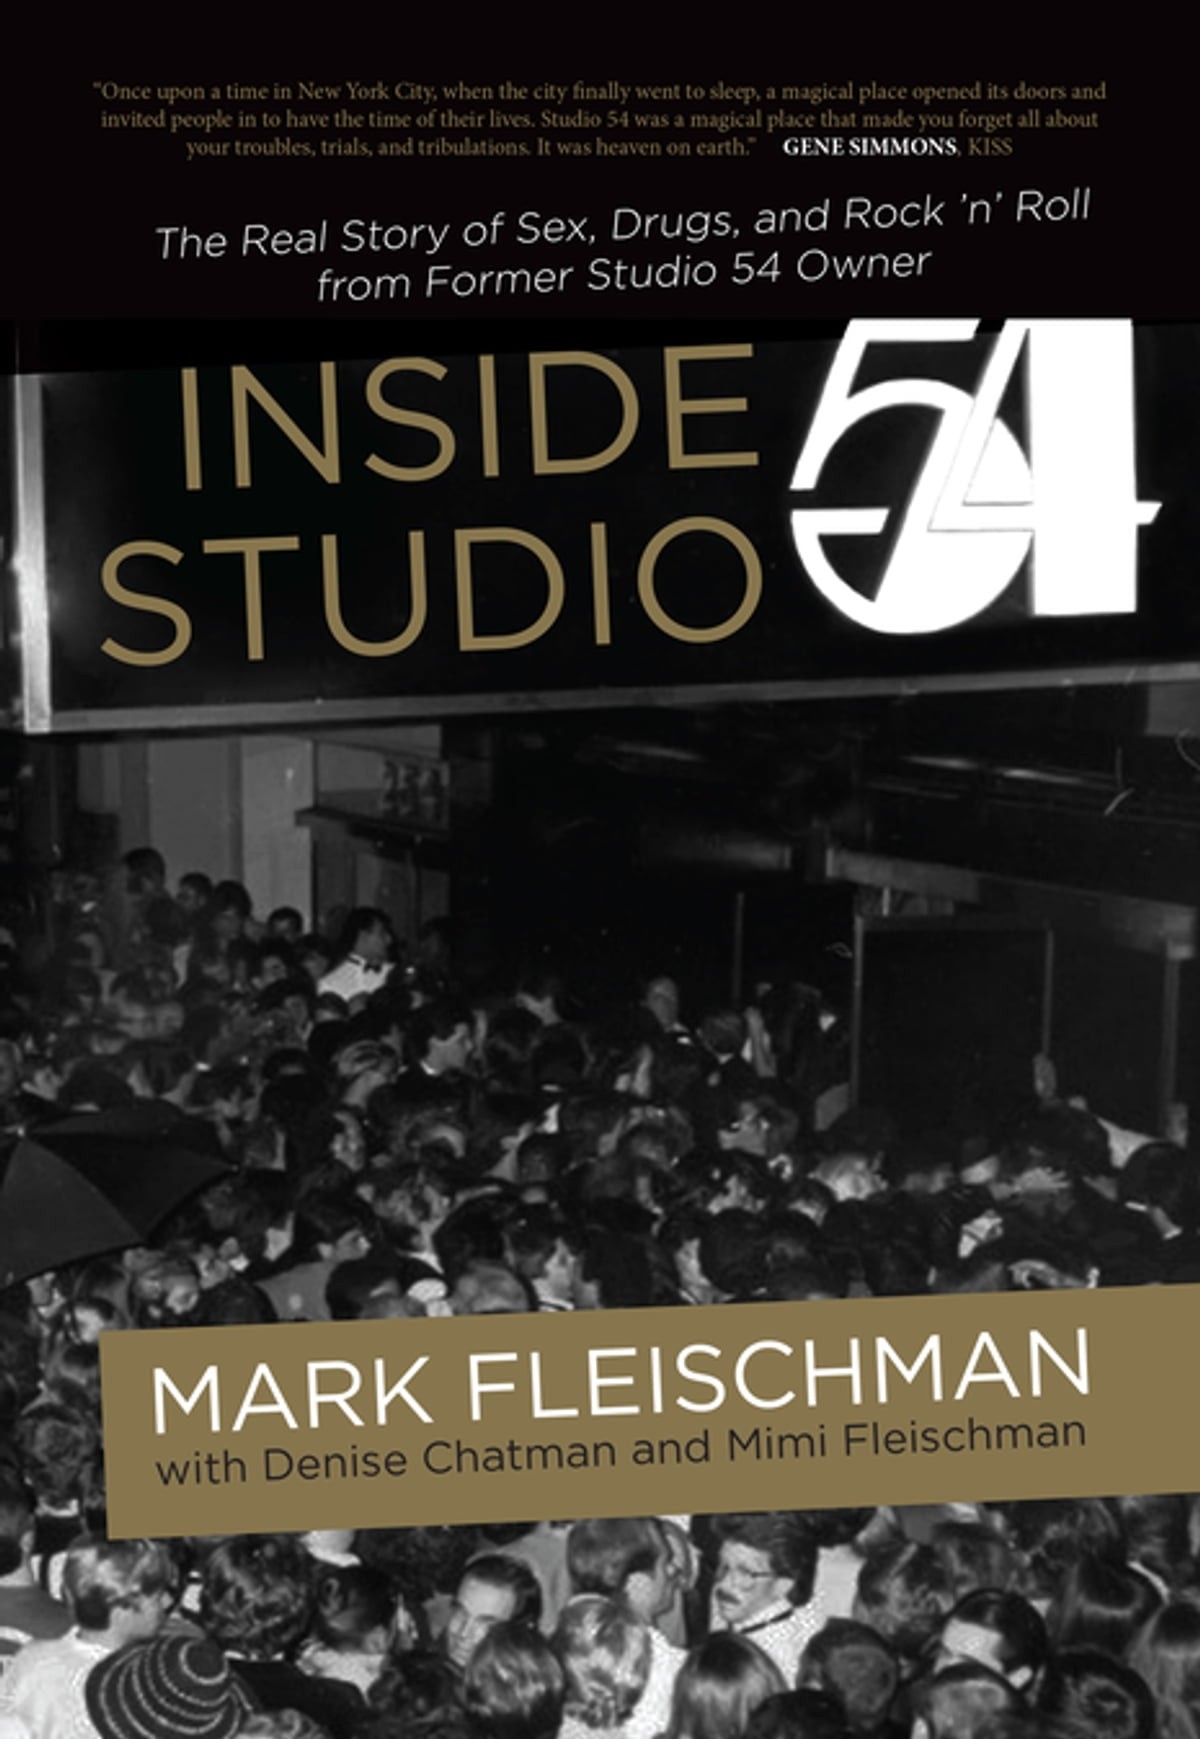 A capa do livro de Mark Fleischman sobre a Studio 54 (Foto: Reprodução)